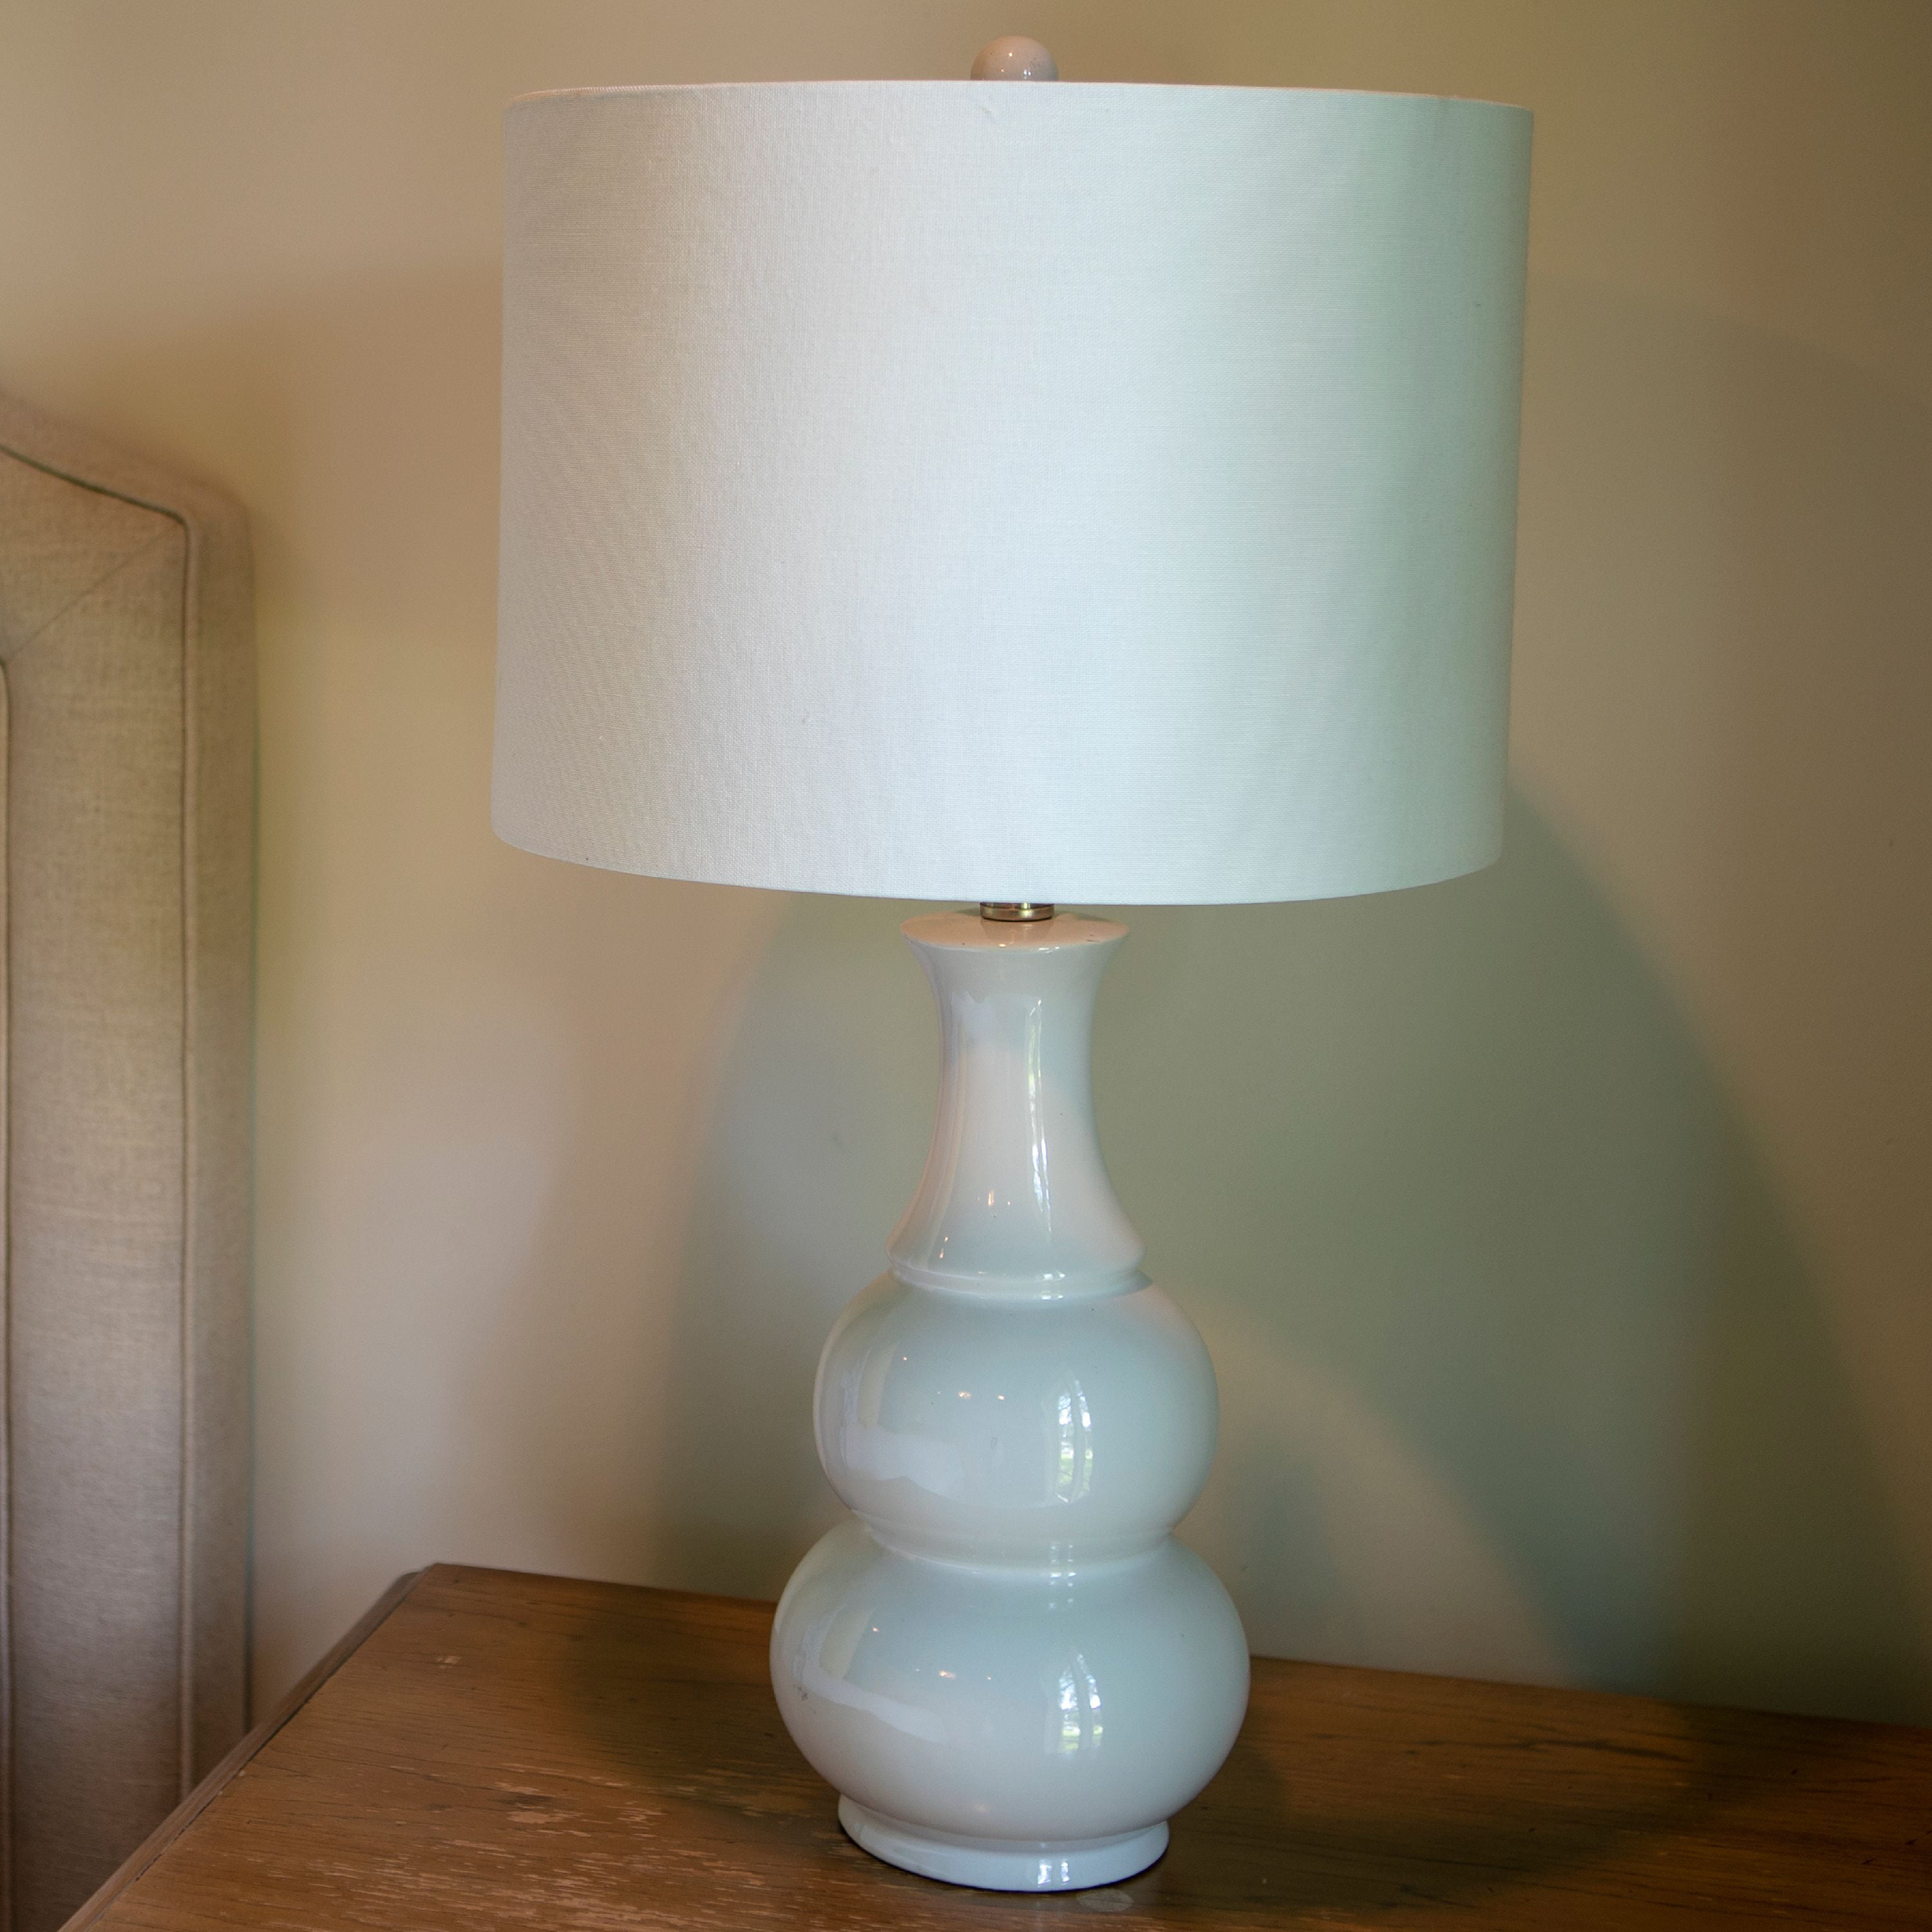 Harper Ceramic Table Lamp Com, Harper Table Lamp